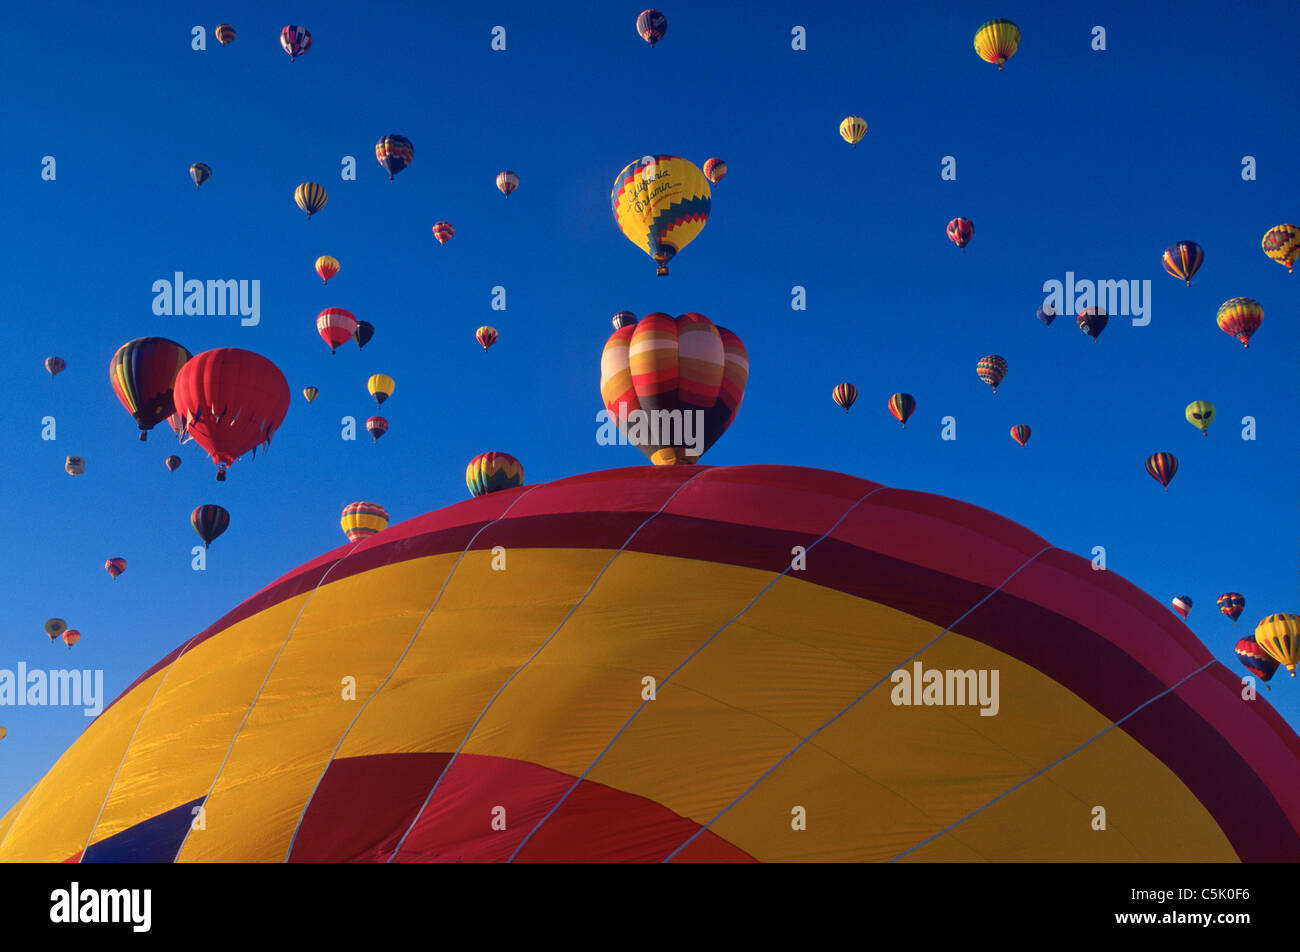 Hot air balloons, Albuquerque Balloon Festival, Albuquerque, New Mexico, USA Stock Photo